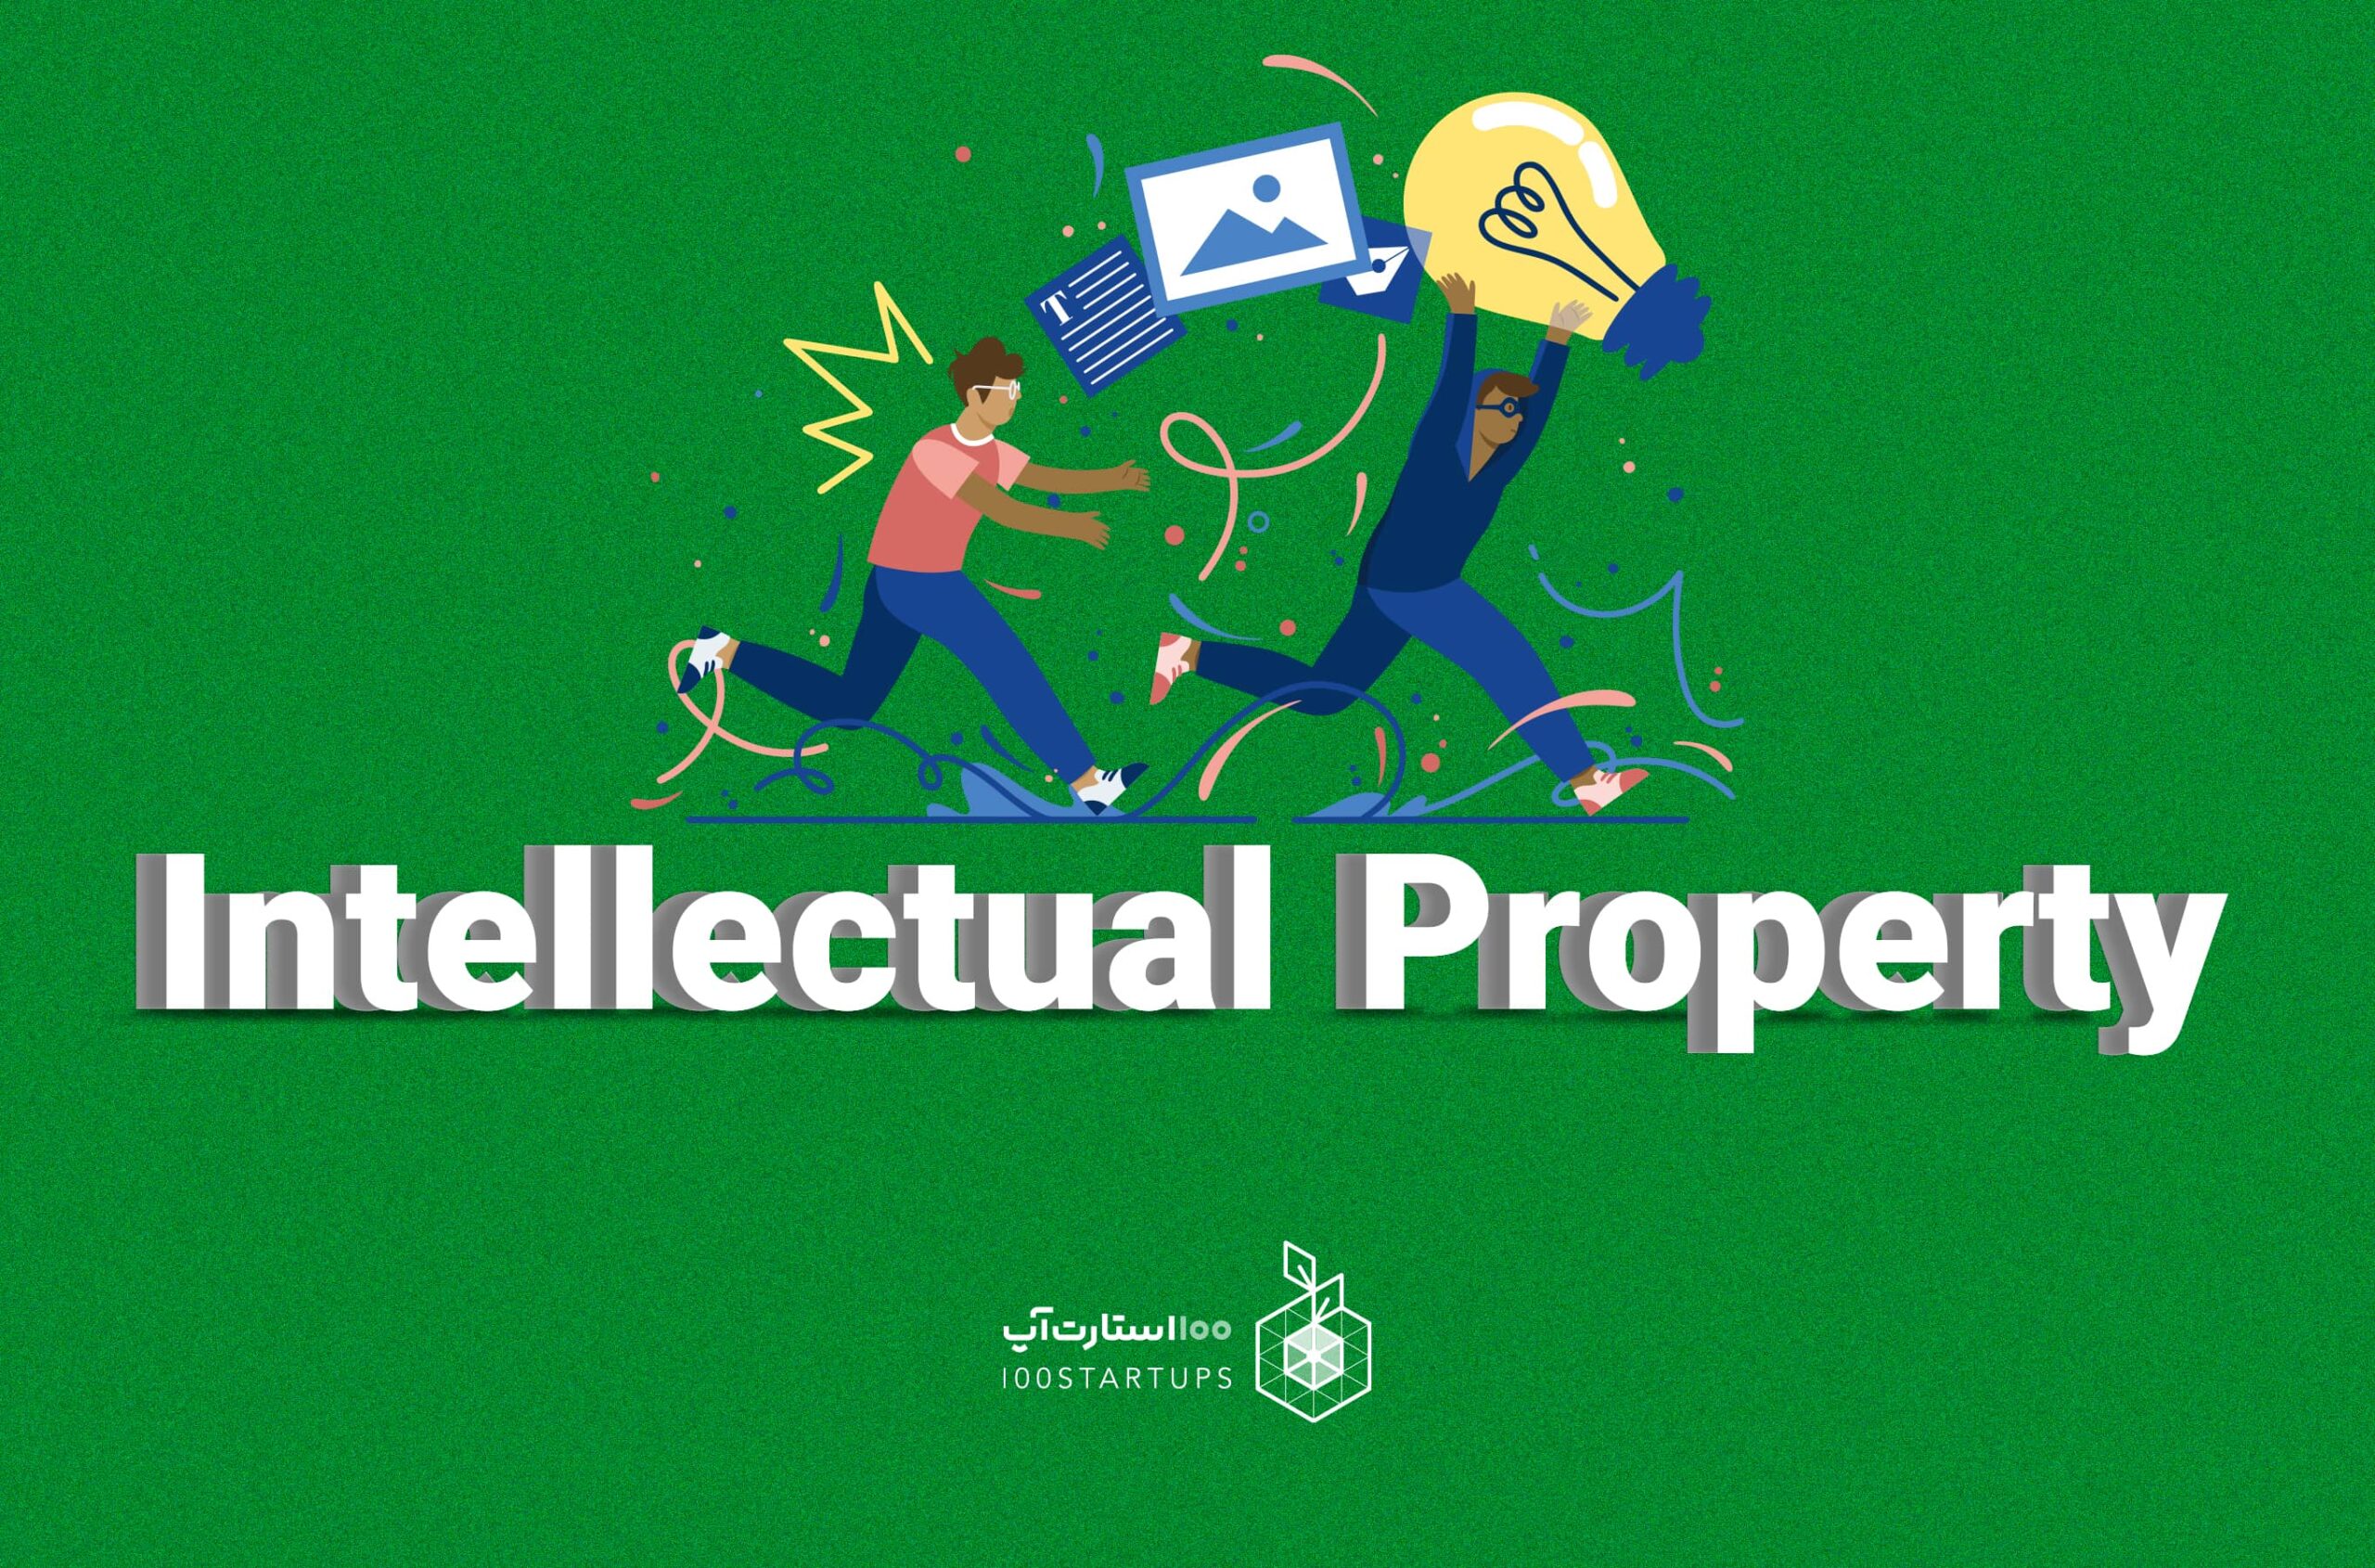 مفهوم مالکیت فکری intellectual property در سایت 100استارتاپ